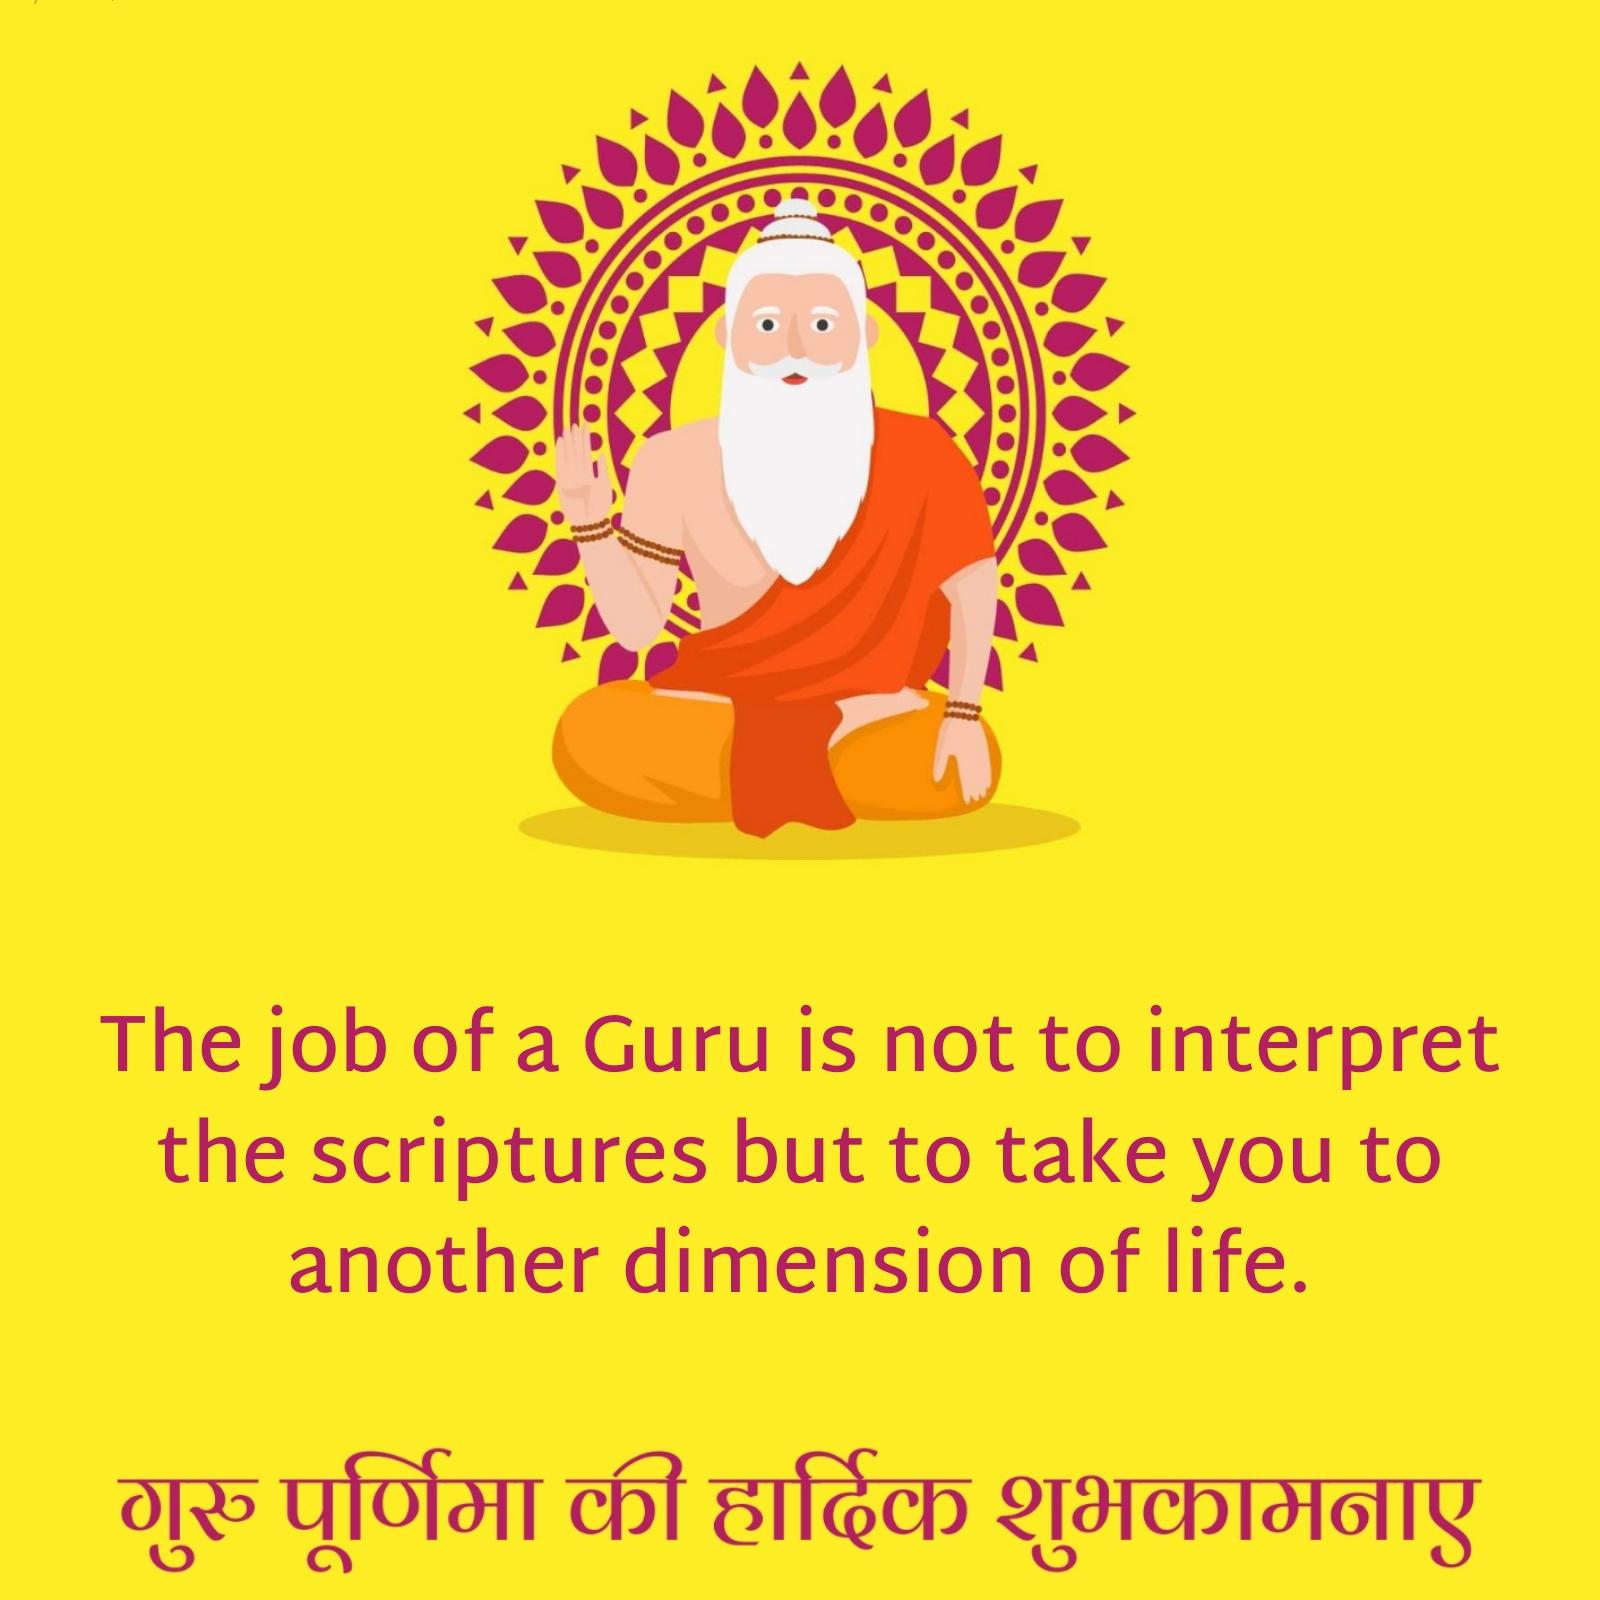 The job of a Guru is not to interpret the scriptures